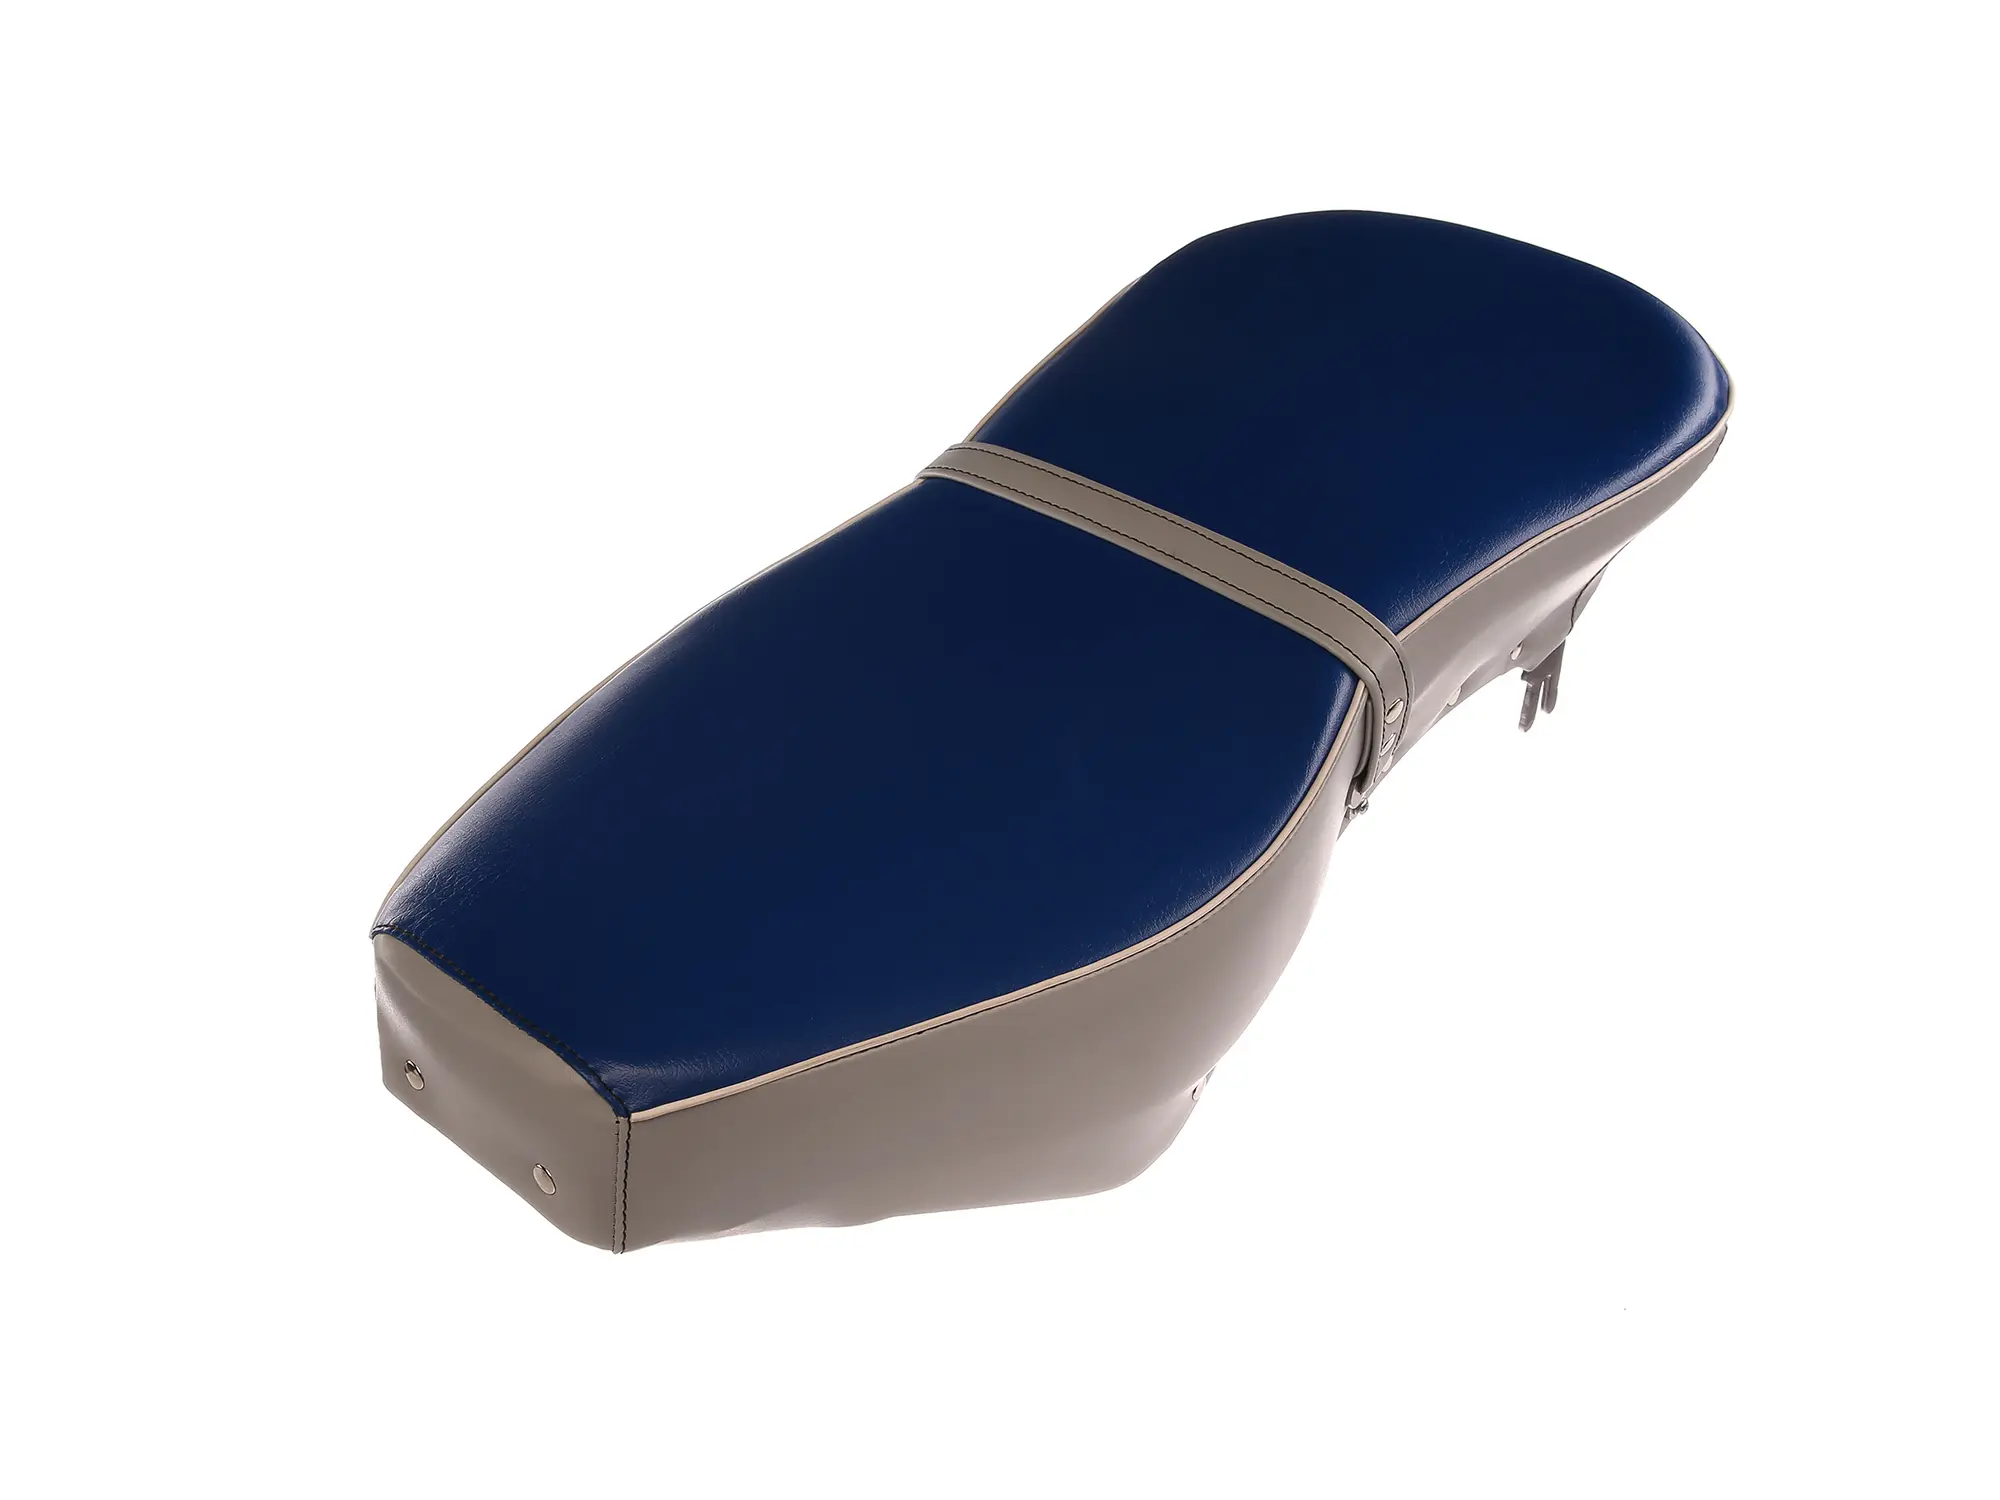 Sitzbank komplett blau-grau mit Riemen - für AWO-Sport, Art.-Nr.: 10067620 - Bild 1